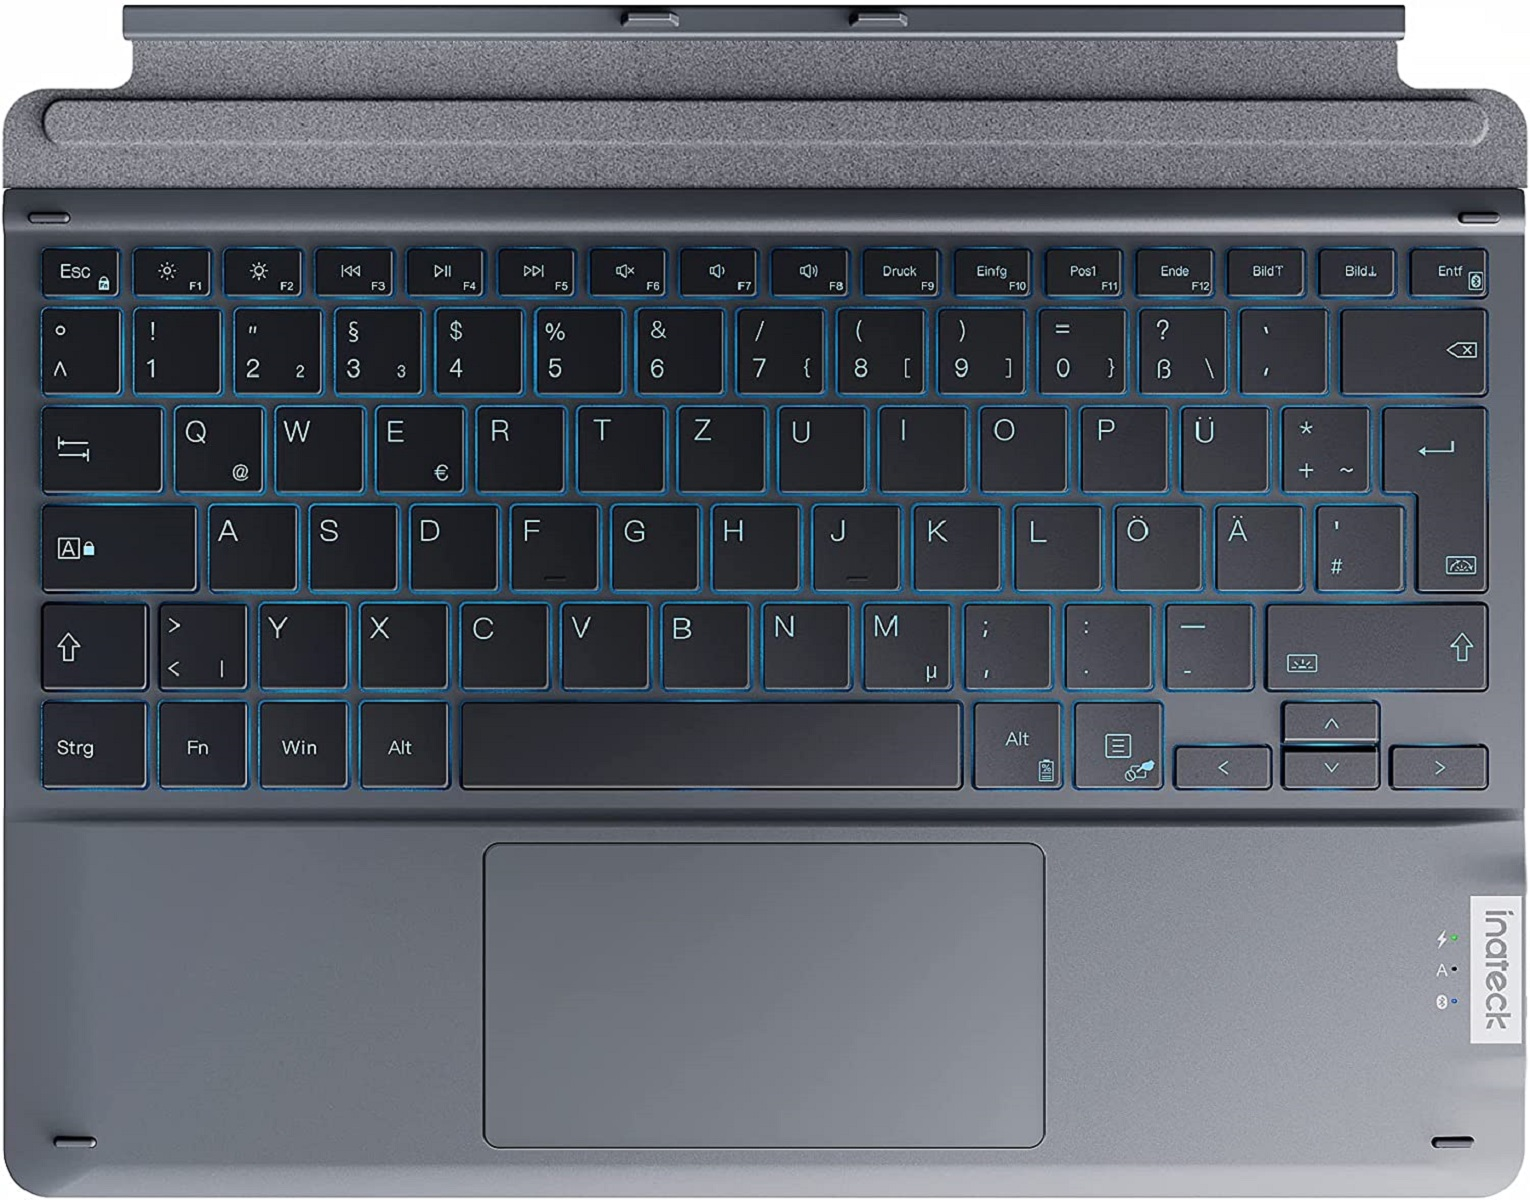 Pro 7-Farbiger Hintergrundbeleuchtung, mit für Tastatur INATECK Surface QWERTZ, Tastatur 8/9/X